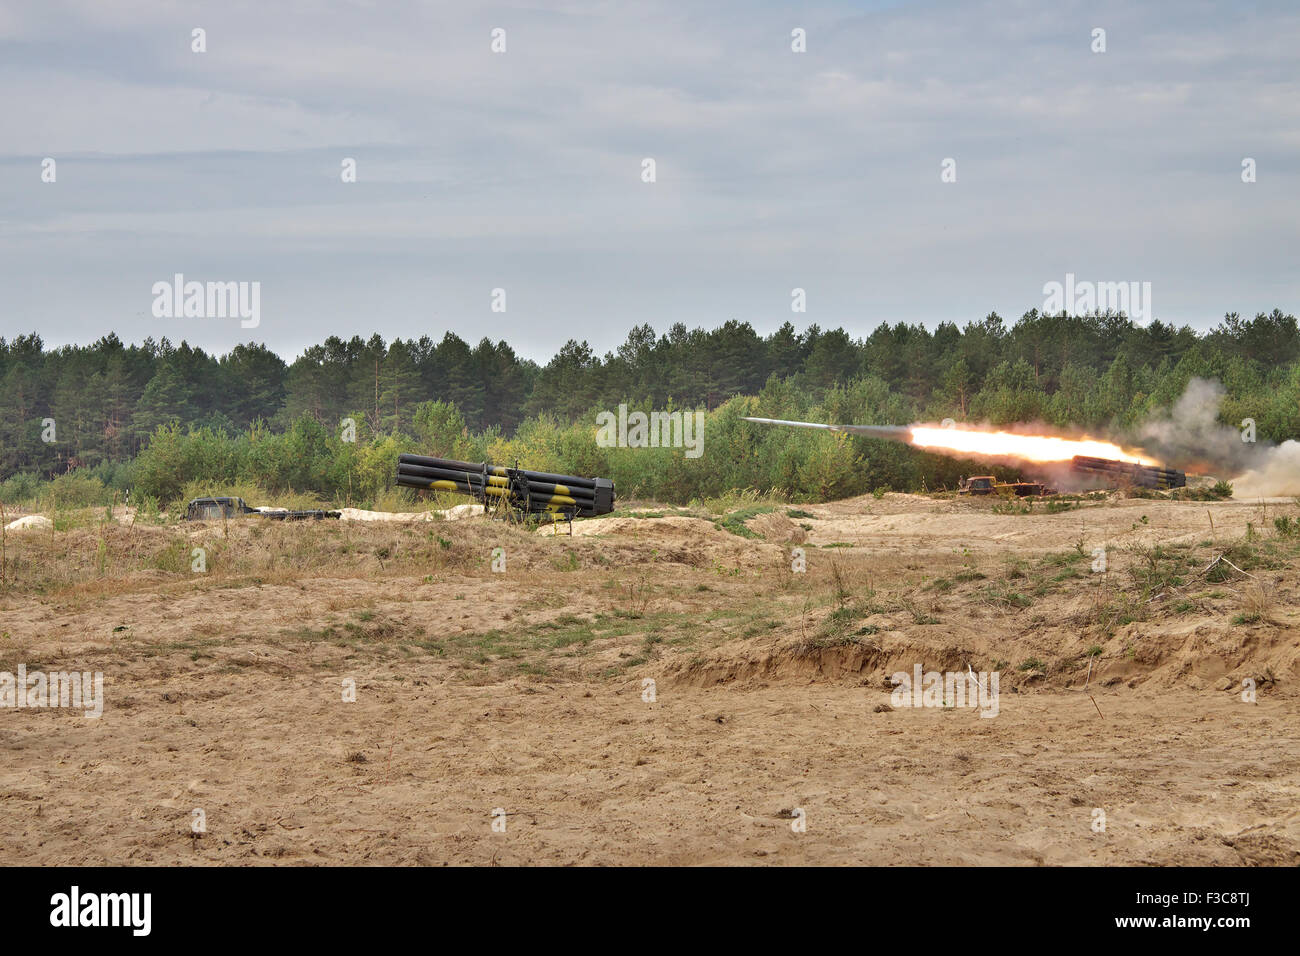 Goncharovskoe, Ukraine - September 16, 2010: BM-27 Uragan missile launchers on position during training firing Stock Photo